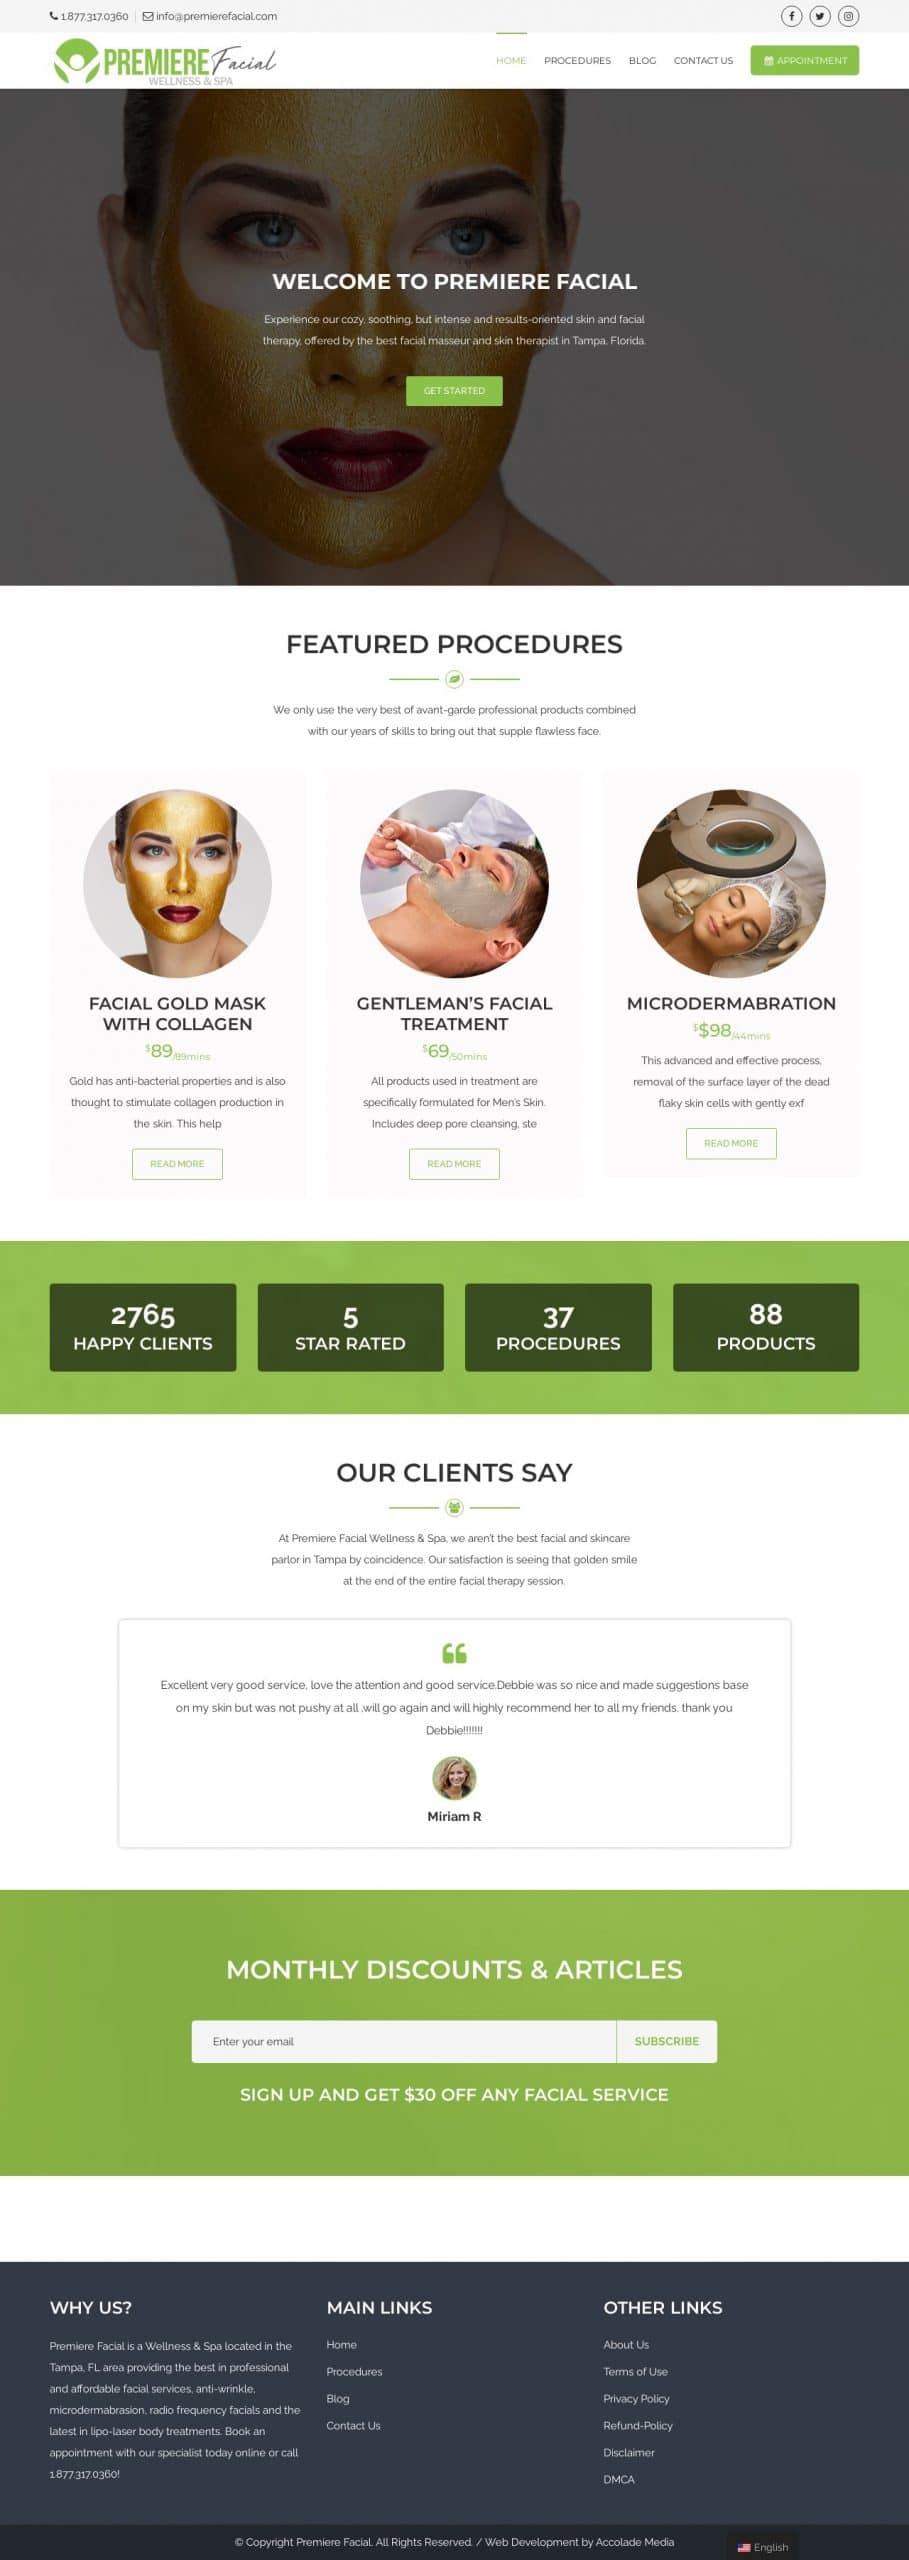 premiere-facial-website-design-layout